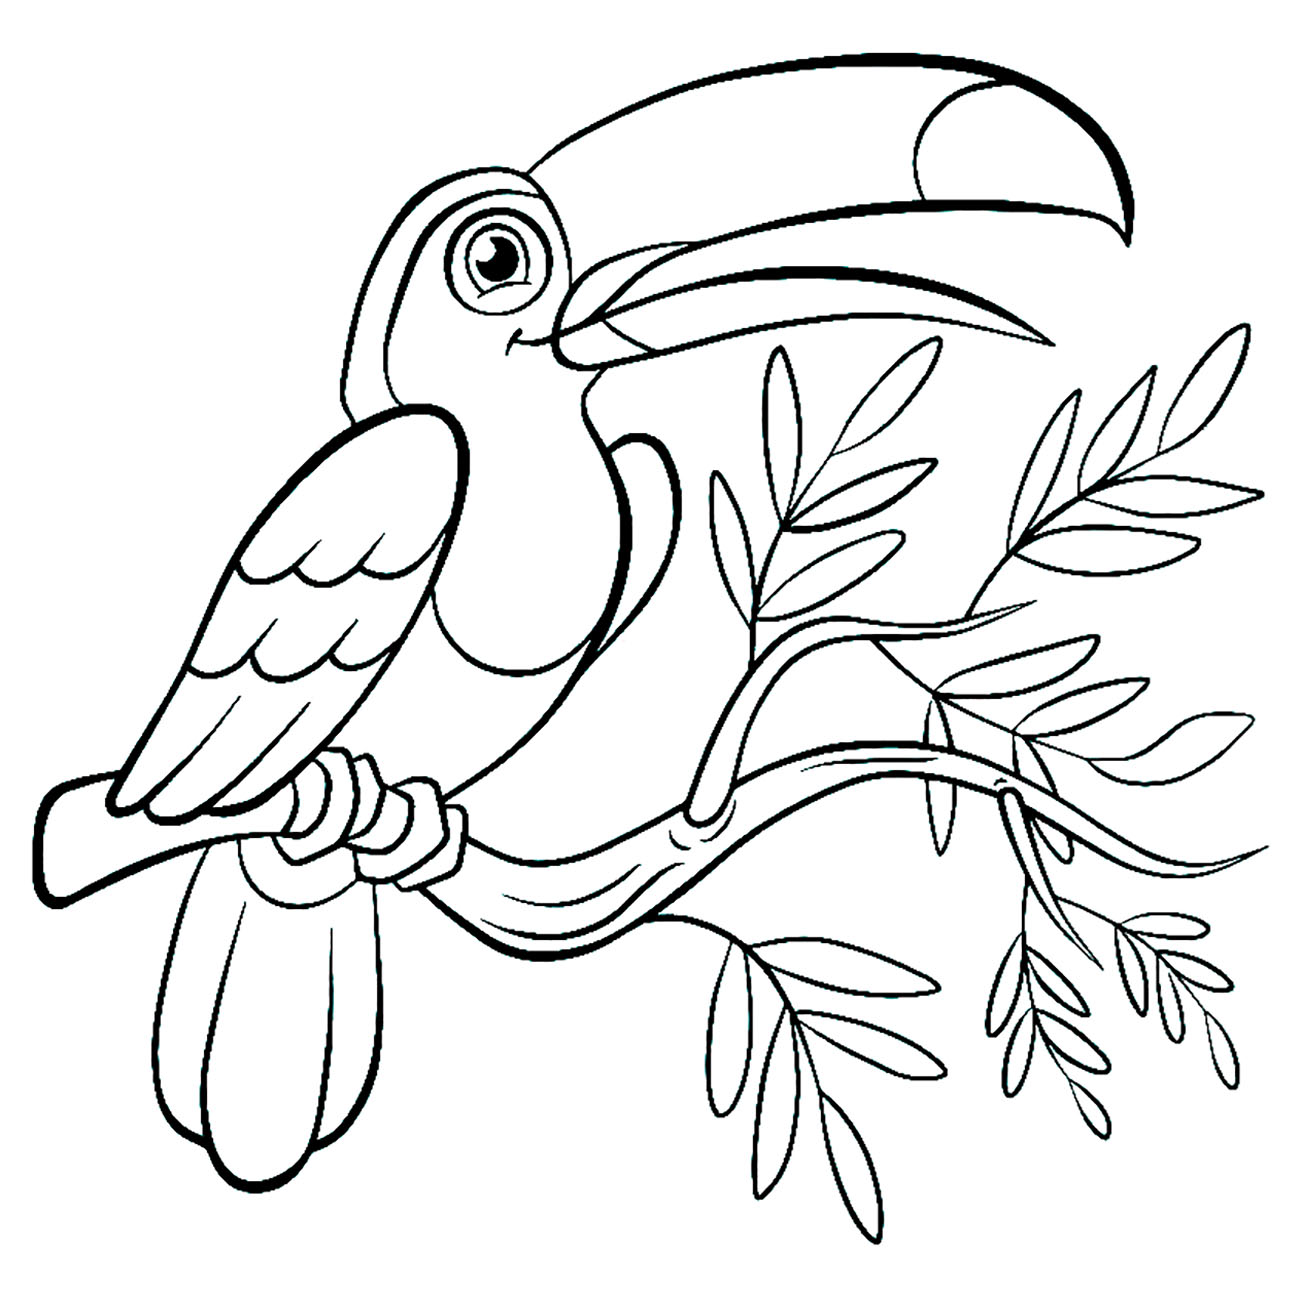 Cách vẽ con vẹt đơn giản với 9 bước cơ bản hướng dẫn chi tiết